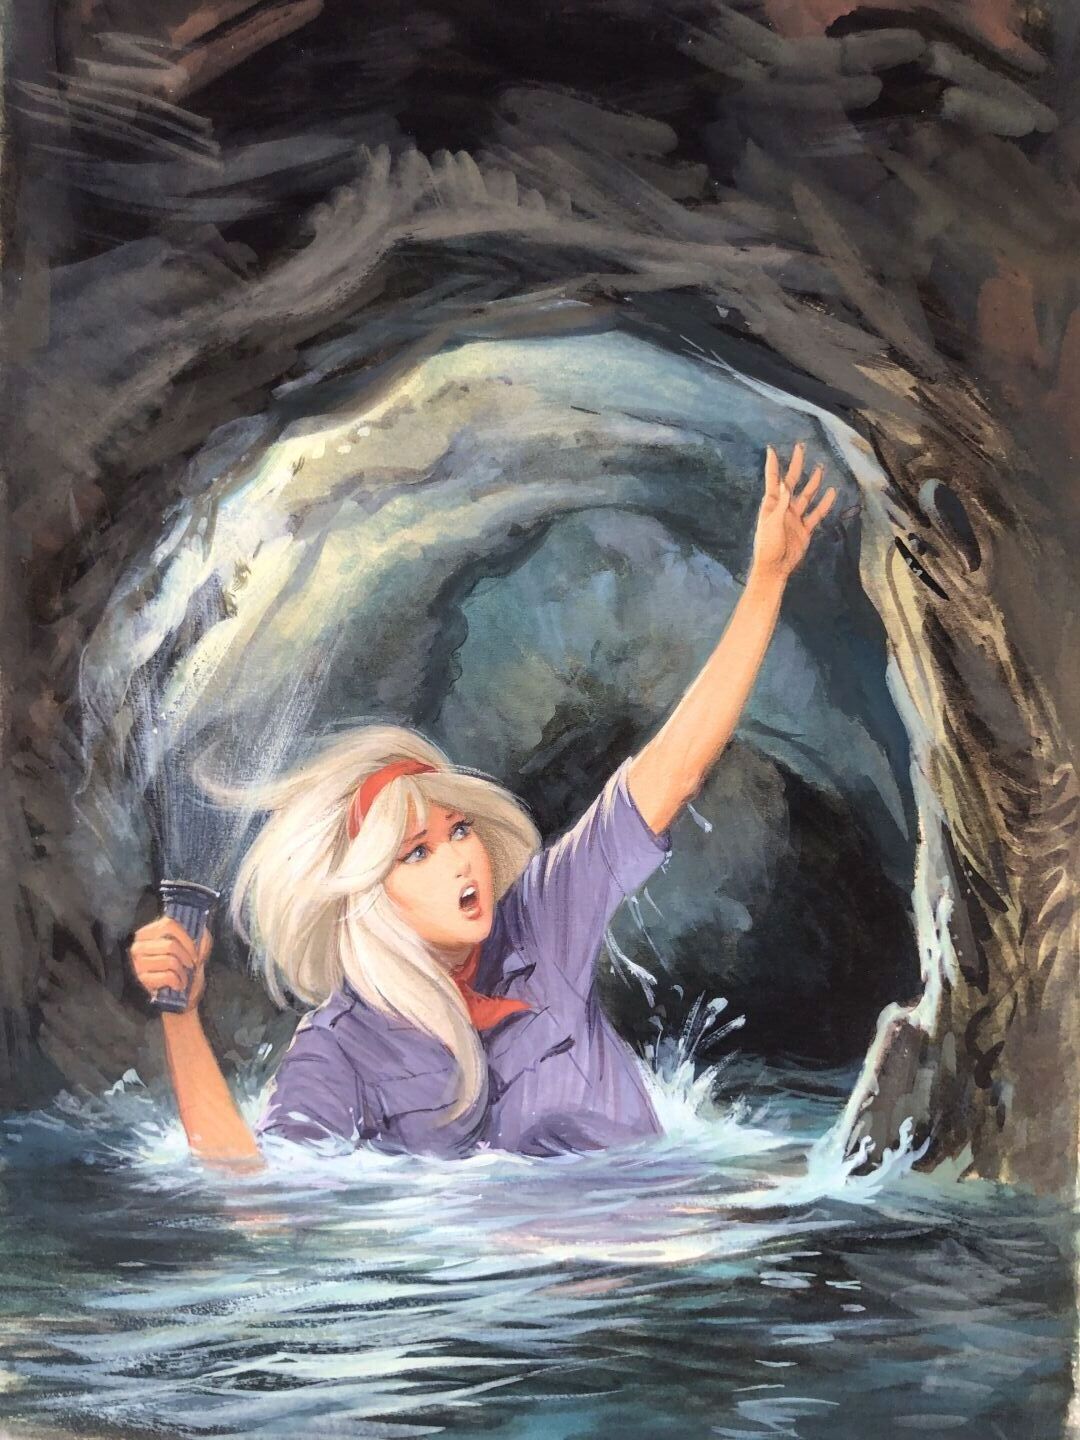 Null 西多布雷，让（1924-1988 年）
Alice et la rivière souterraine》，封面插图原件。
卡片水粉画，30.5 x 2&hellip;